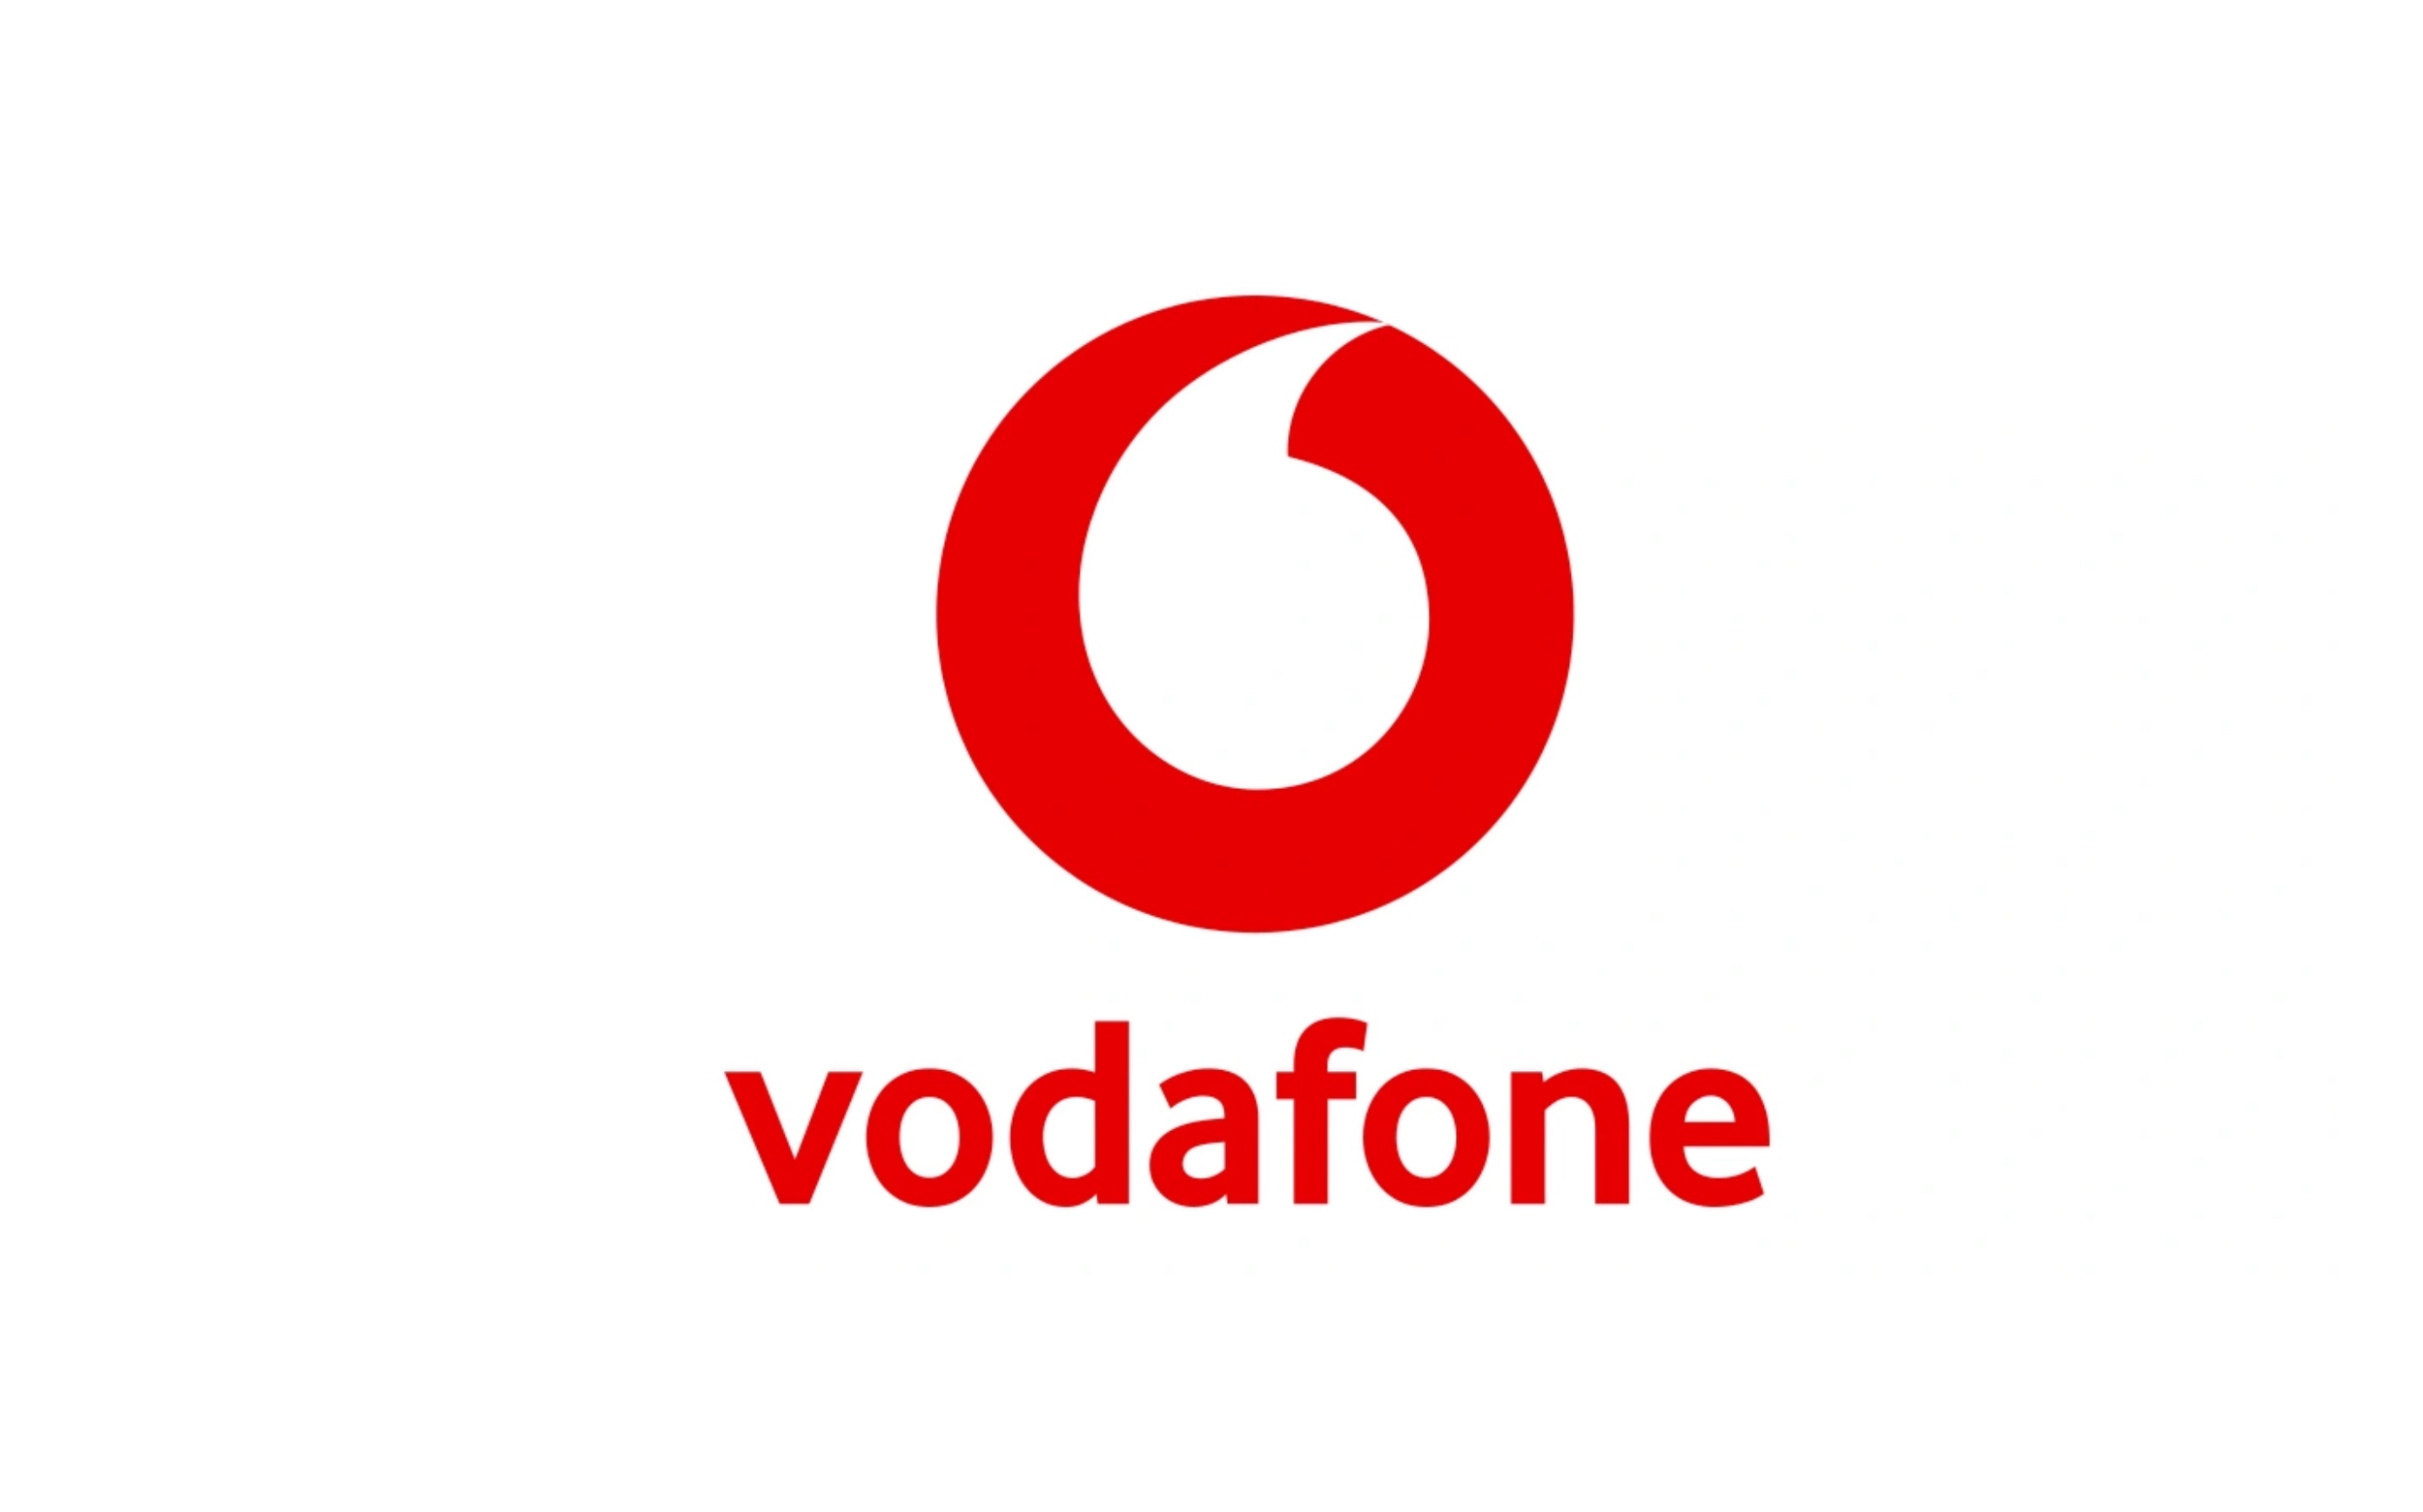 Vodafone Always On deals